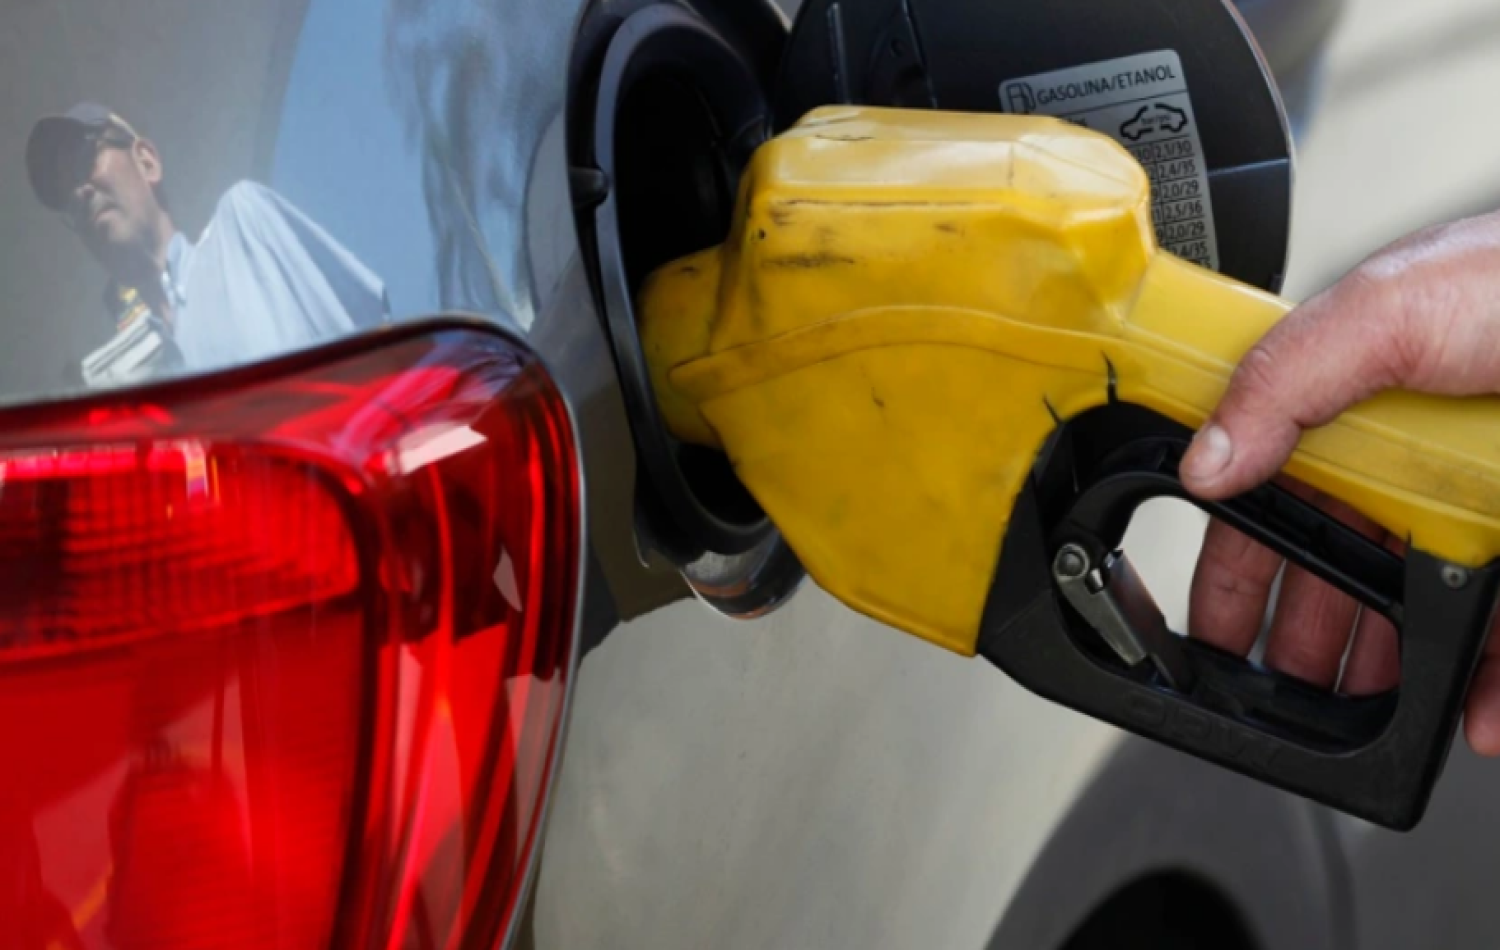 Teto do ICMS: redução na gasolina pode chegar a R$ 1,15 por litro, dizem economistas